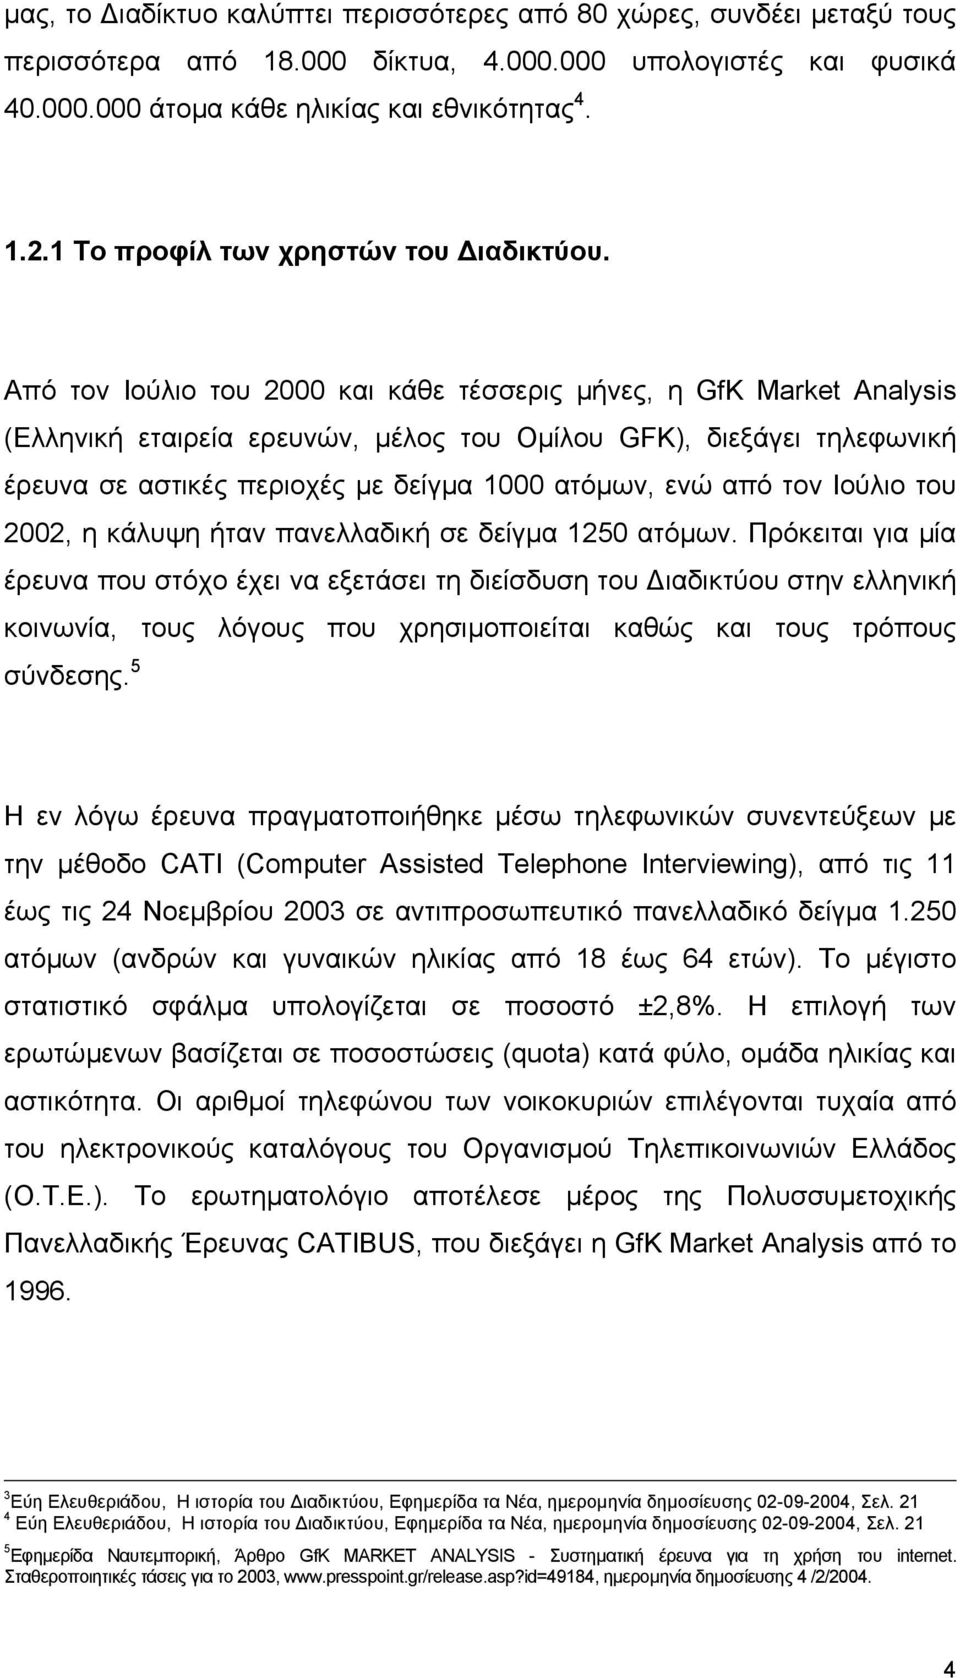 Από τον Ιούλιο του 2000 και κάθε τέσσερις µήνες, η GfK Market Analysis (Ελληνική εταιρεία ερευνών, µέλος του Οµίλου GFK), διεξάγει τηλεφωνική έρευνα σε αστικές περιοχές µε δείγµα 1000 ατόµων, ενώ από